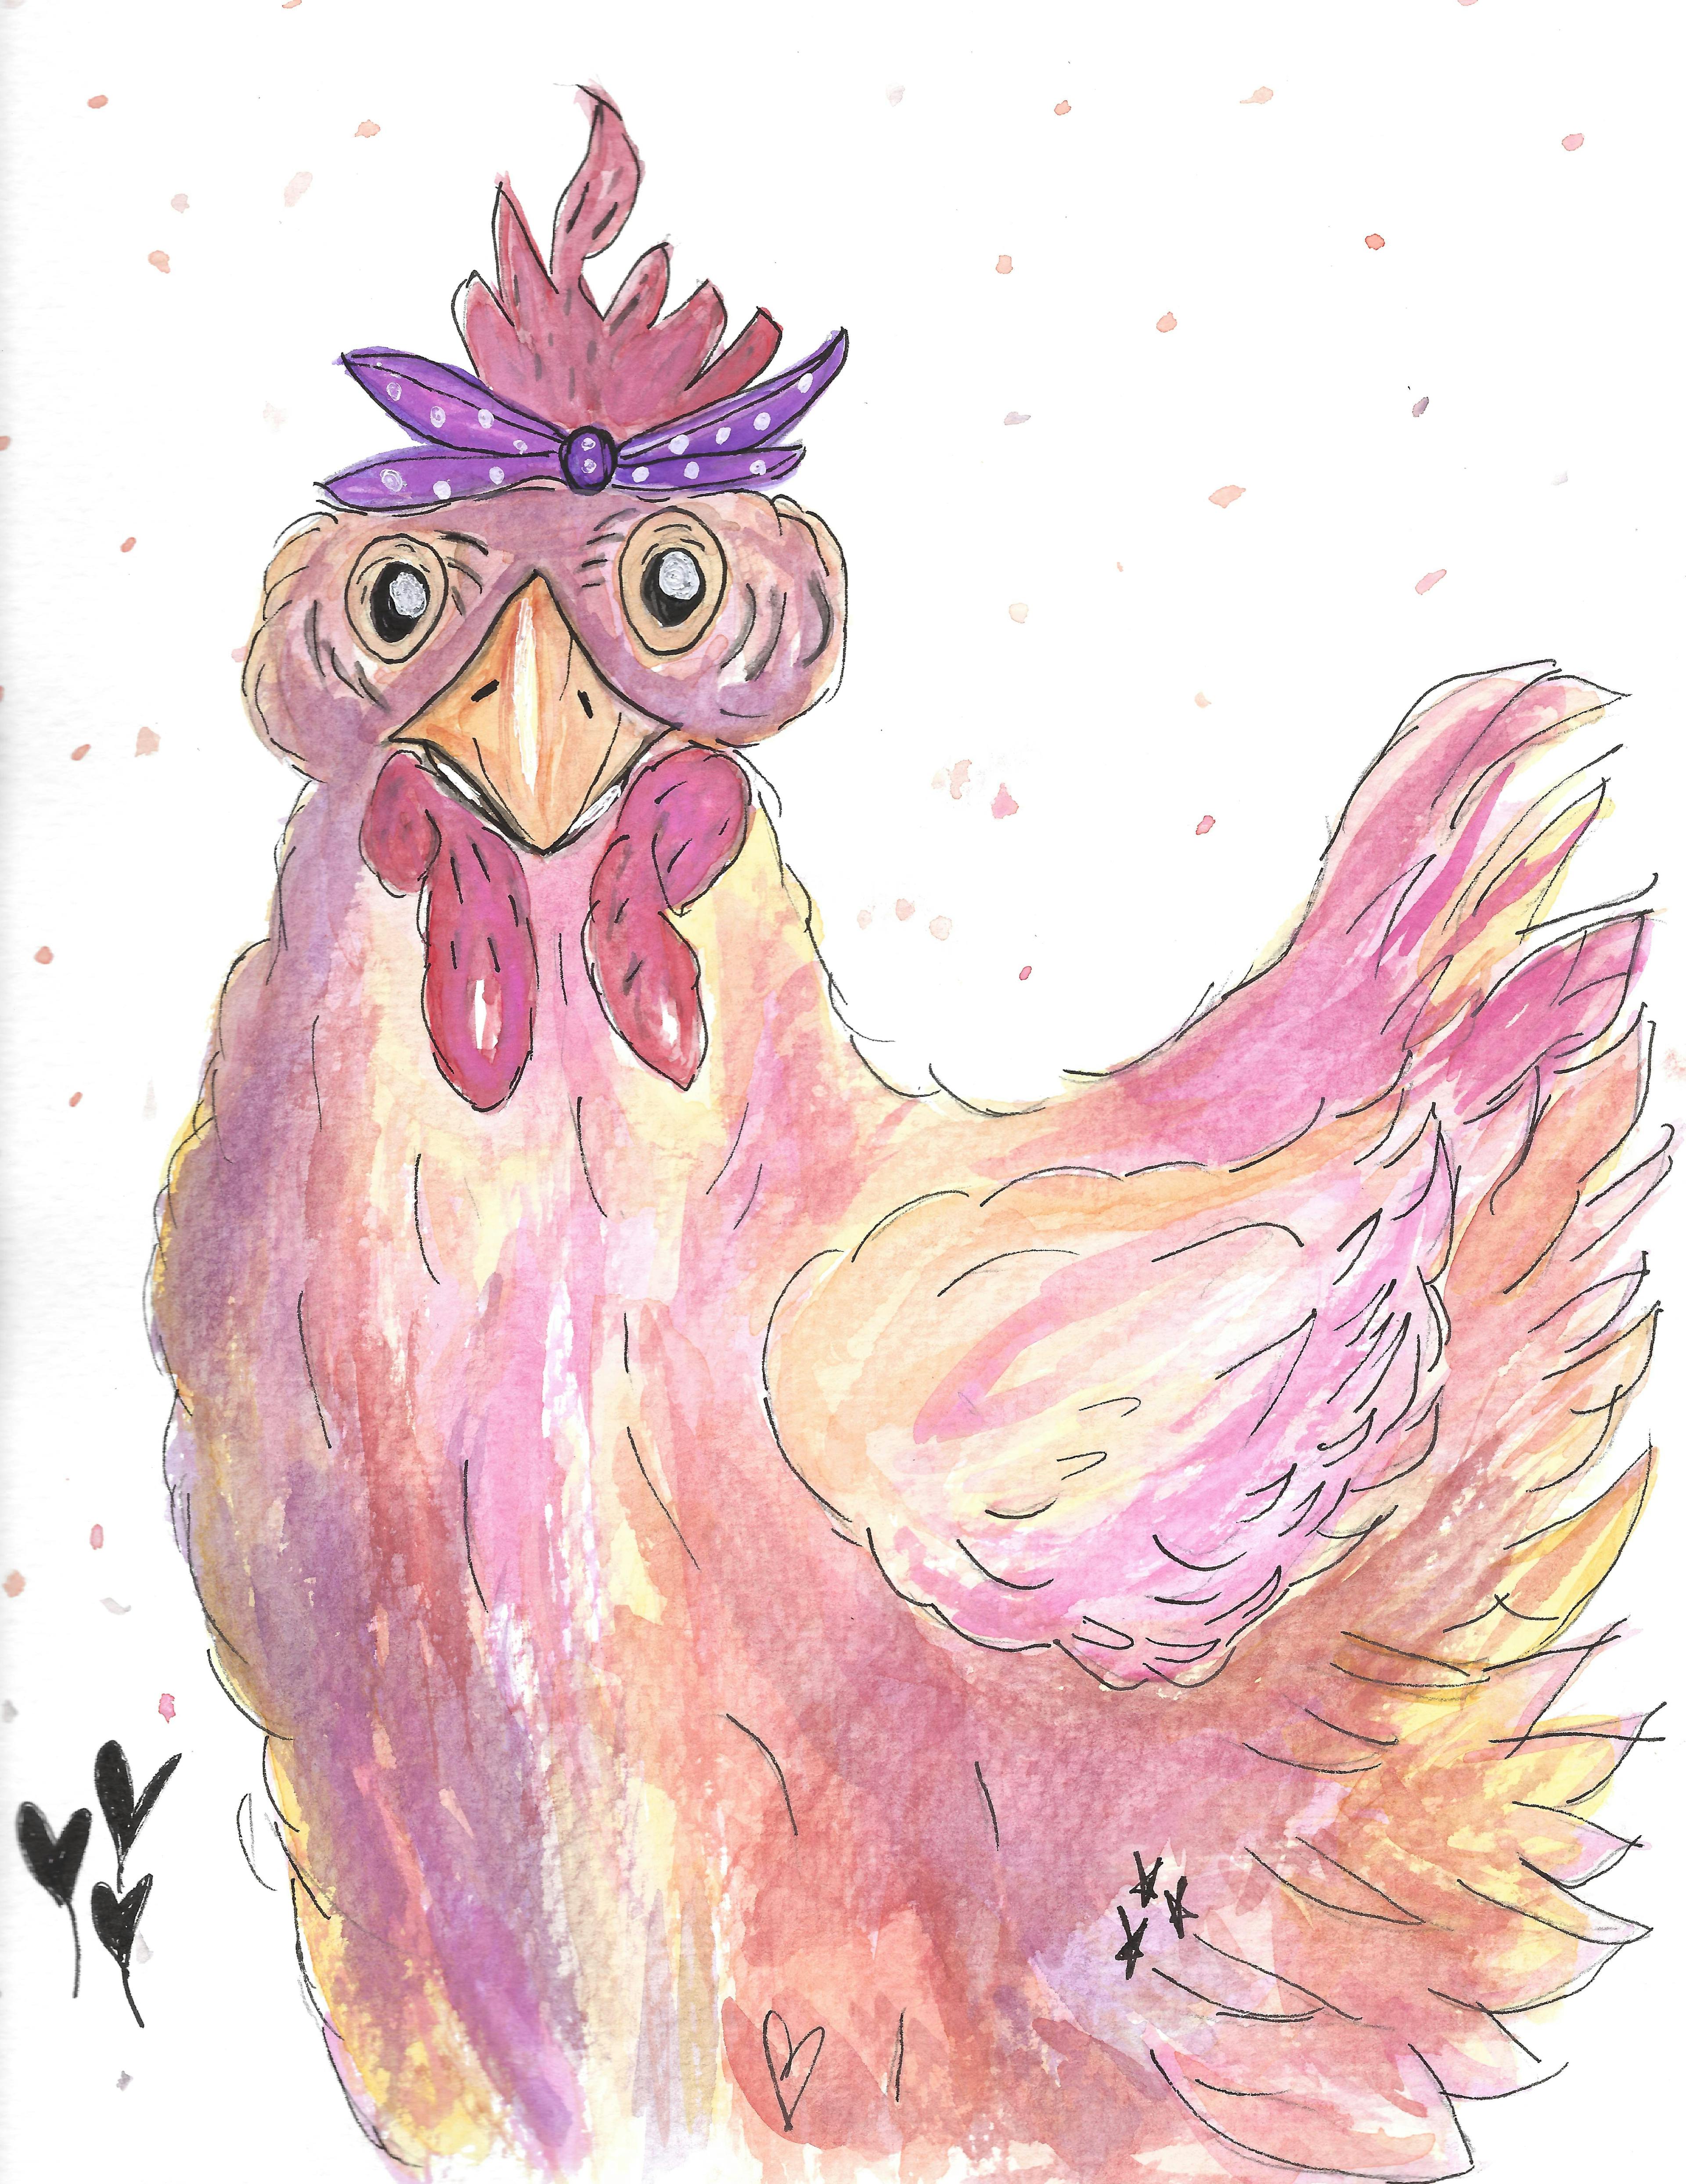 Chicken Art Print